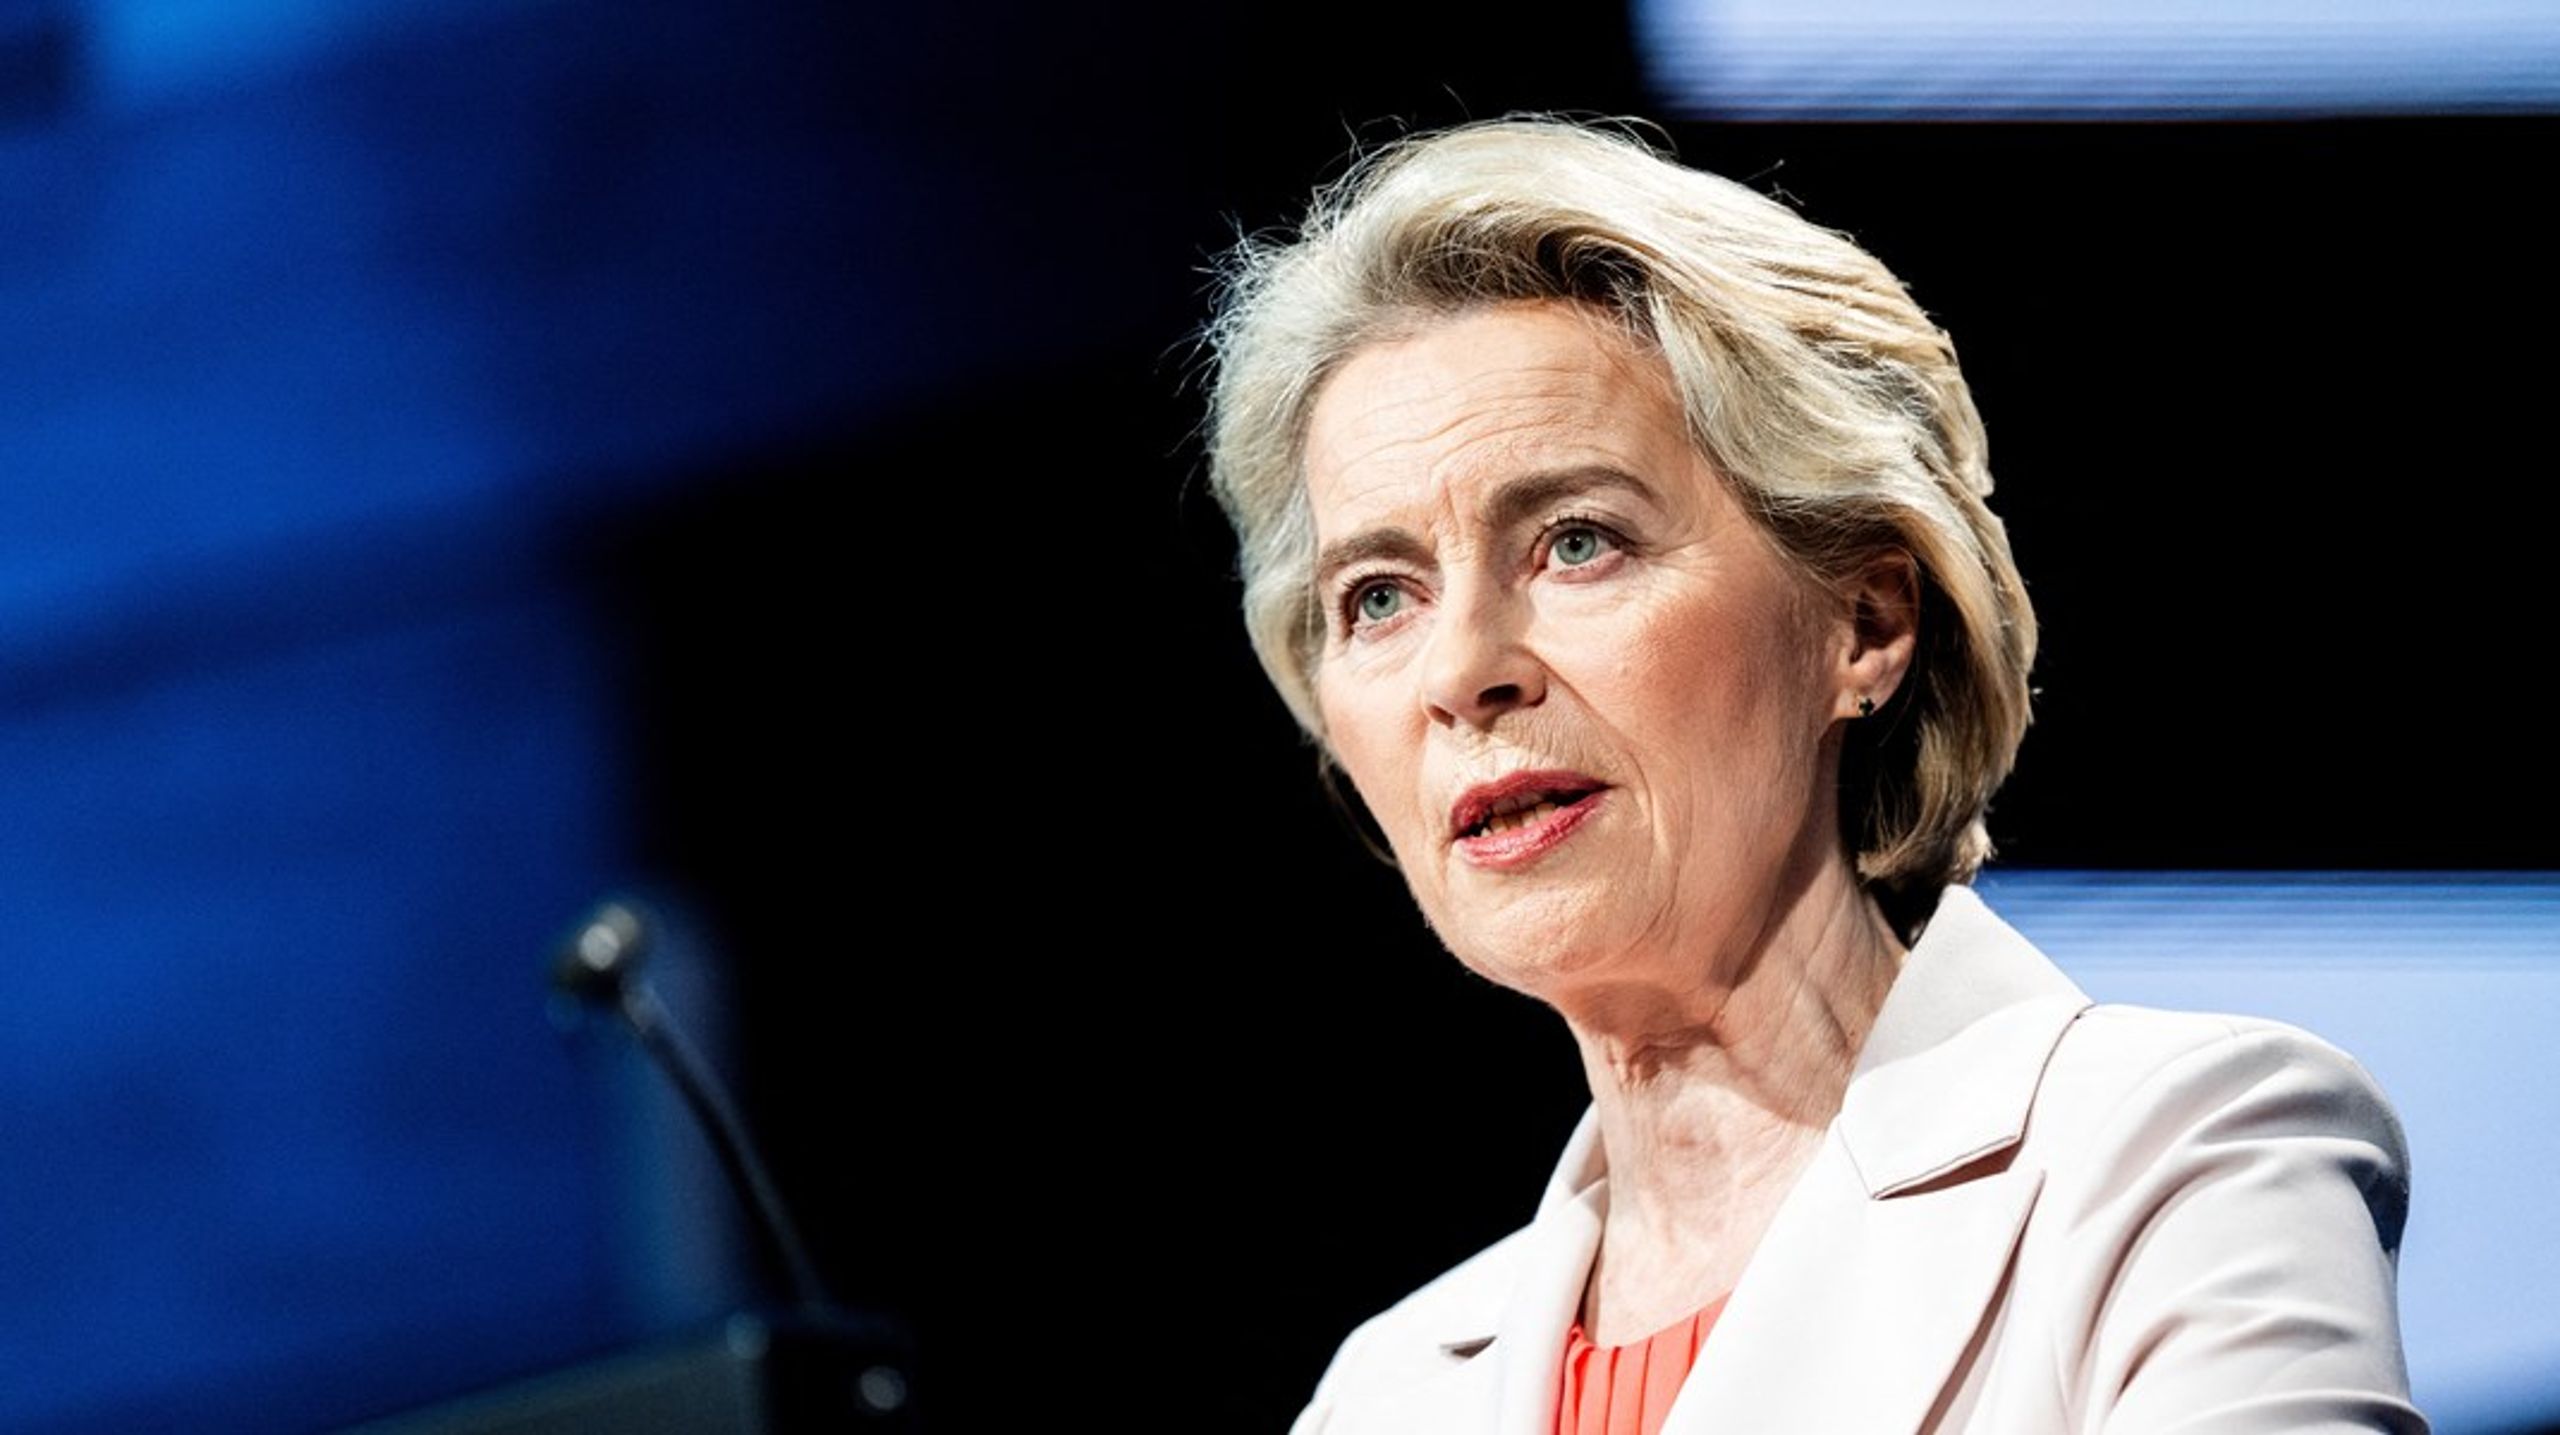 Dersom hun blir gjenvalgt som EU-kommisjonens president etter valget i juni, lover Ursula von der Leyen å fremme et forslag om å opprette et eget EU-byrå for å beskytte det europeiske demokratiet. Ideen ble presentert i en tale som hun holdt på et demokratitoppmøte i København tirsdag.